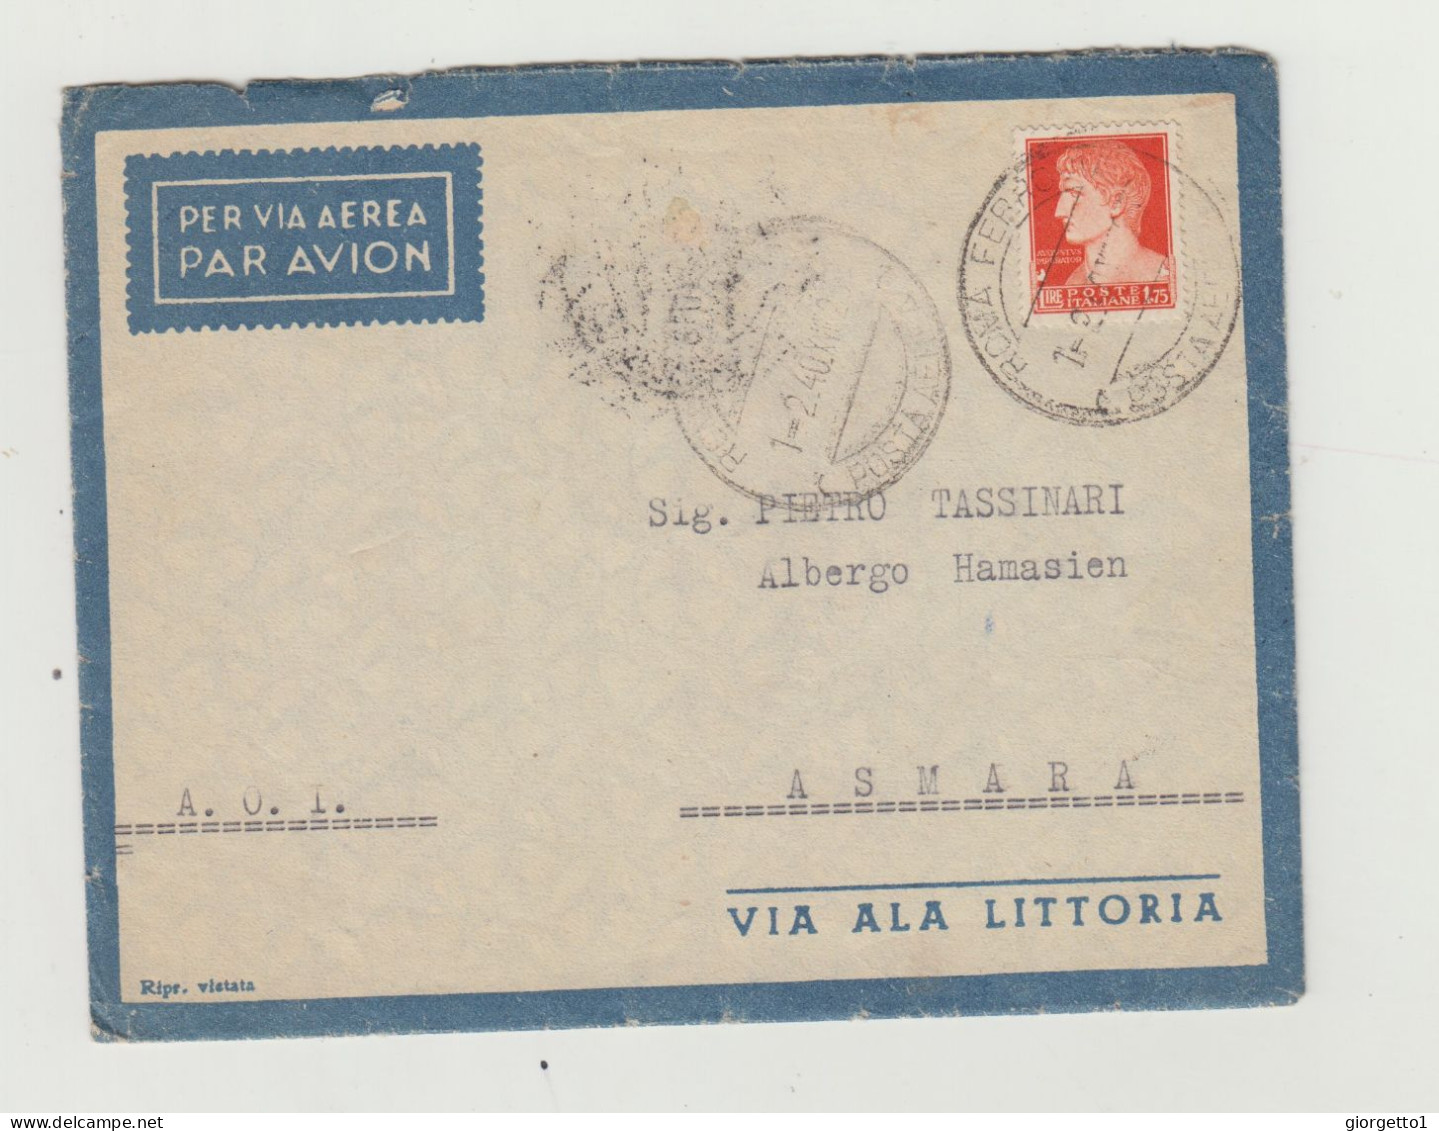 BUSTA CON LETTERA - VIA ALA LITTORIA - ERITREA VIAGGIATA  NEL 1940 VERSO ASMARA DA ROMA WW2 A.O.I.- COLONIA ERITREA - Poststempel (Flugzeuge)